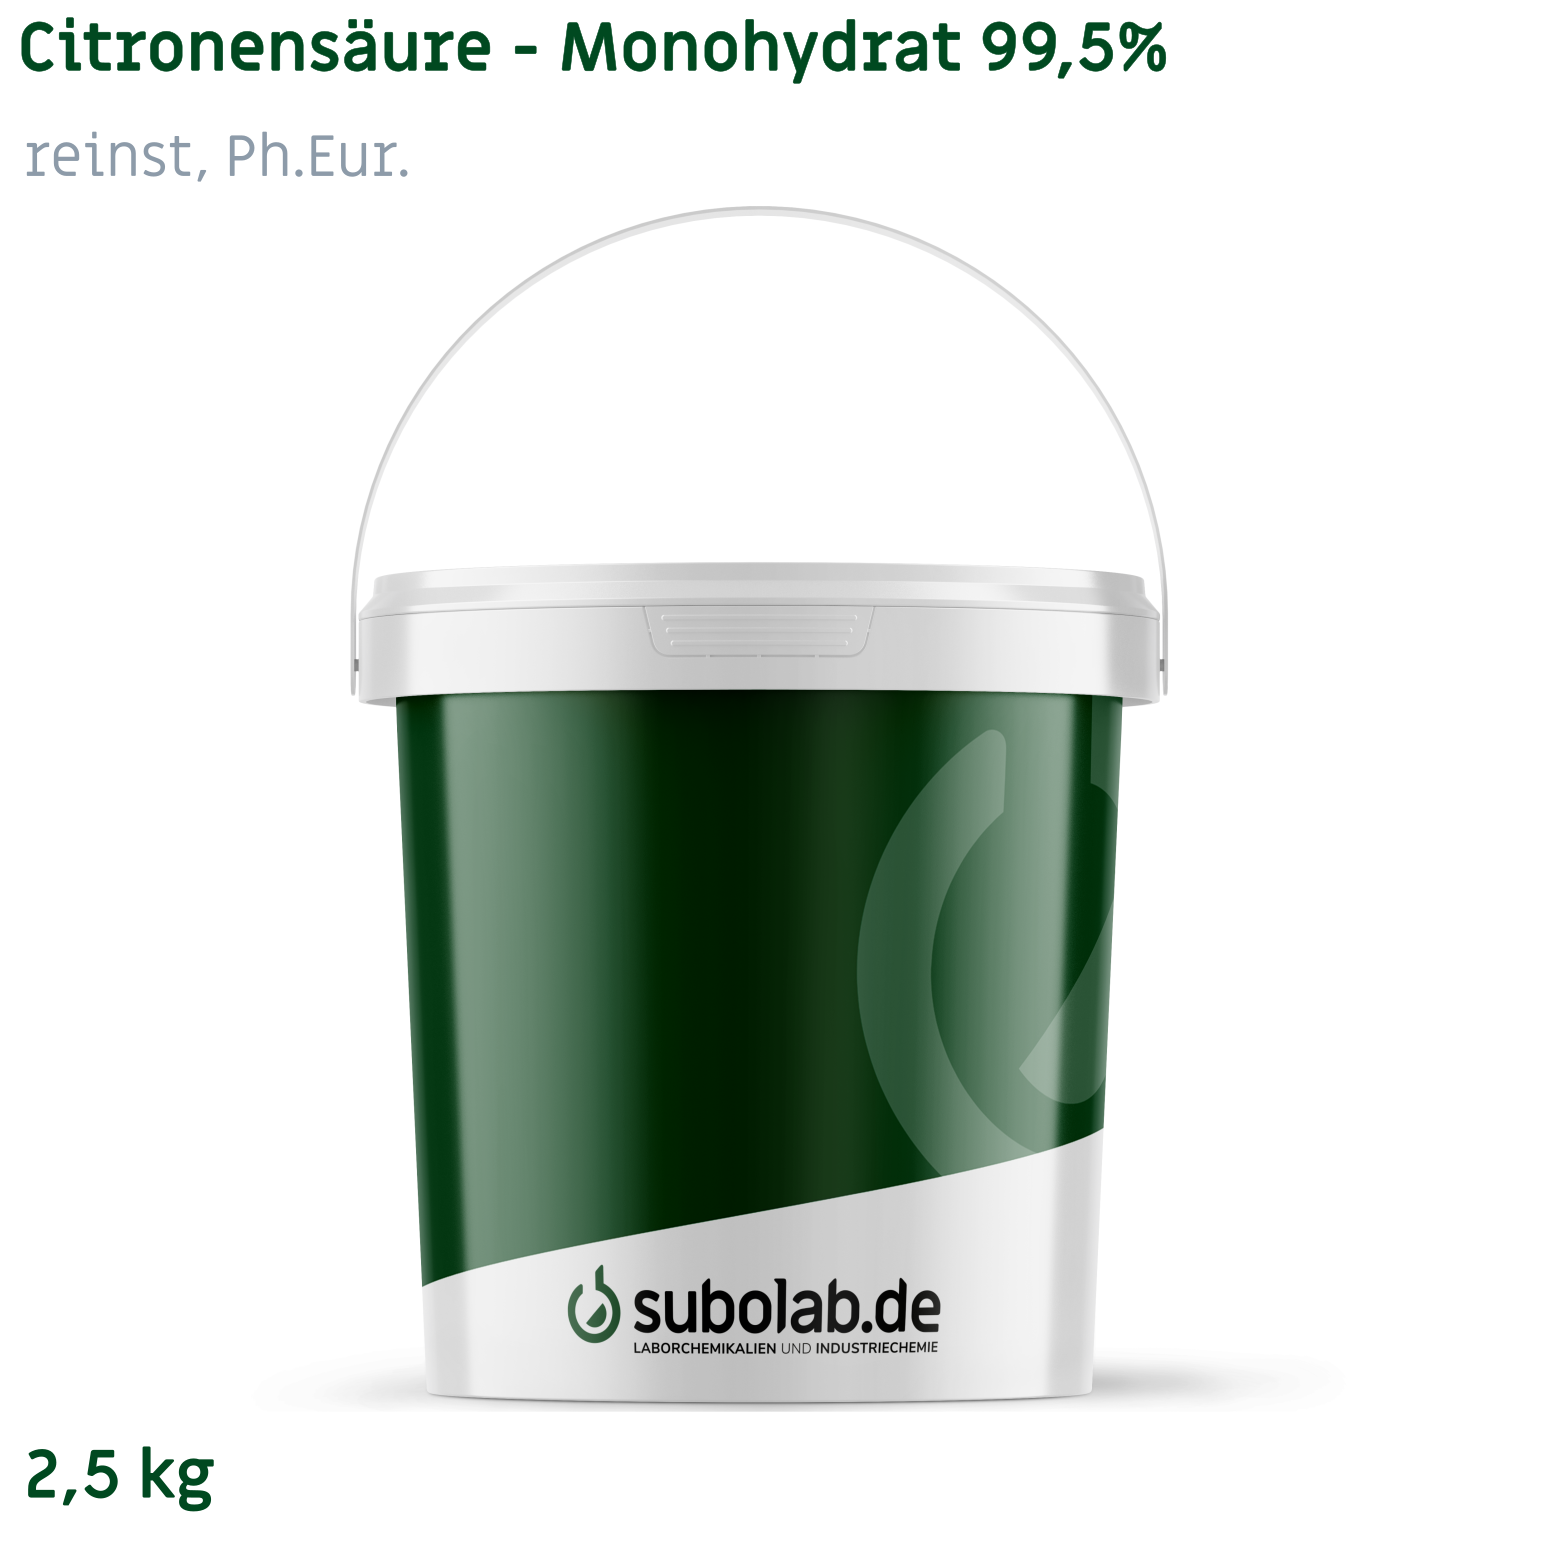 Bild von Citronensäure - Monohydrat 99,5% reinst, Ph.Eur. (2,5 kg)